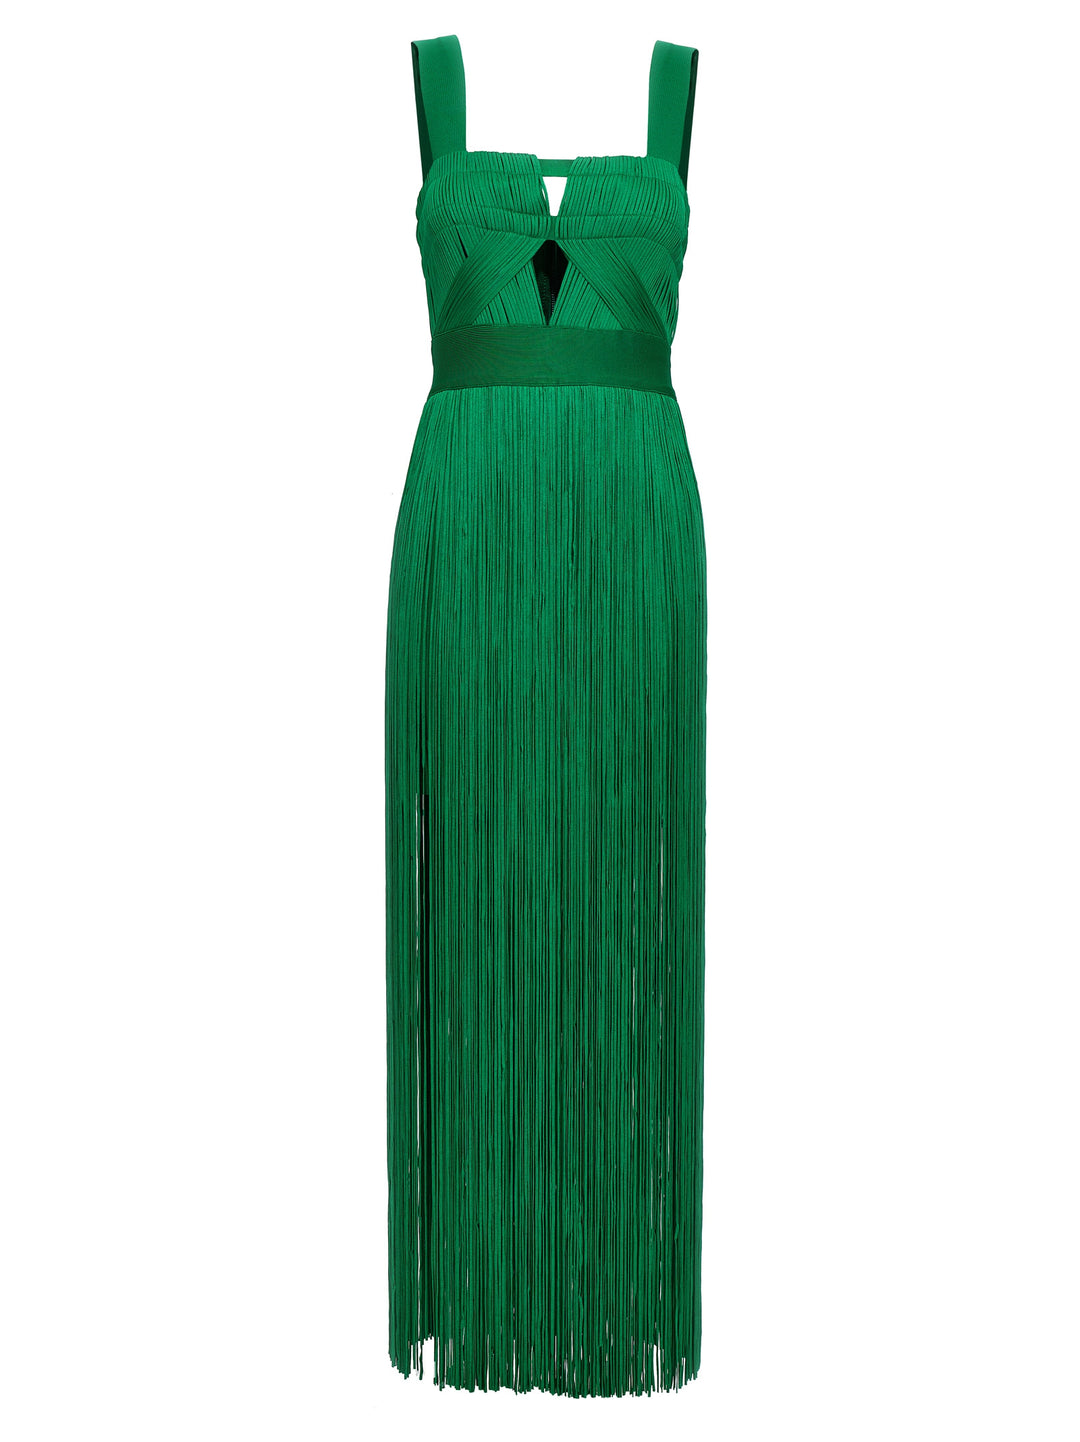 Fringed Dress Abiti Verde